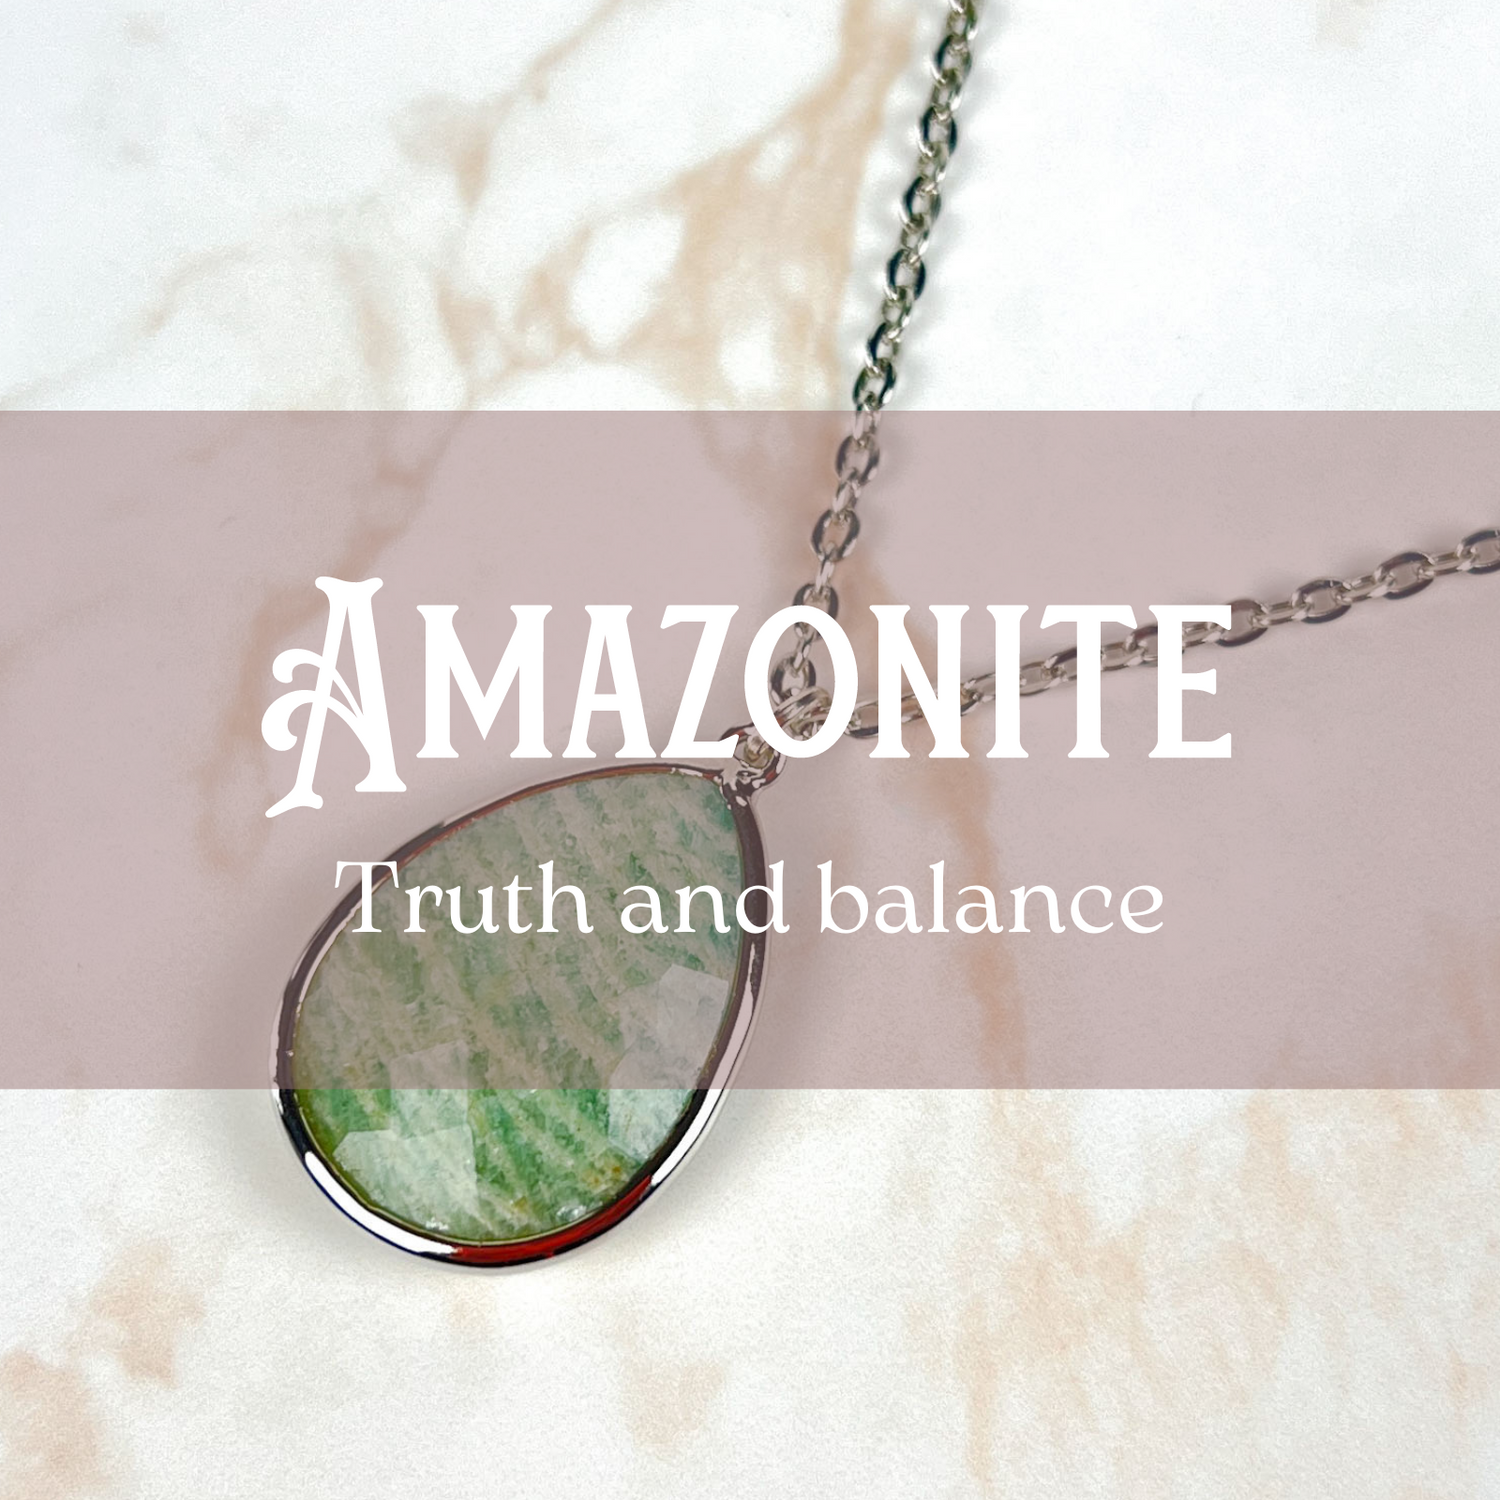 Amazonite jewelry